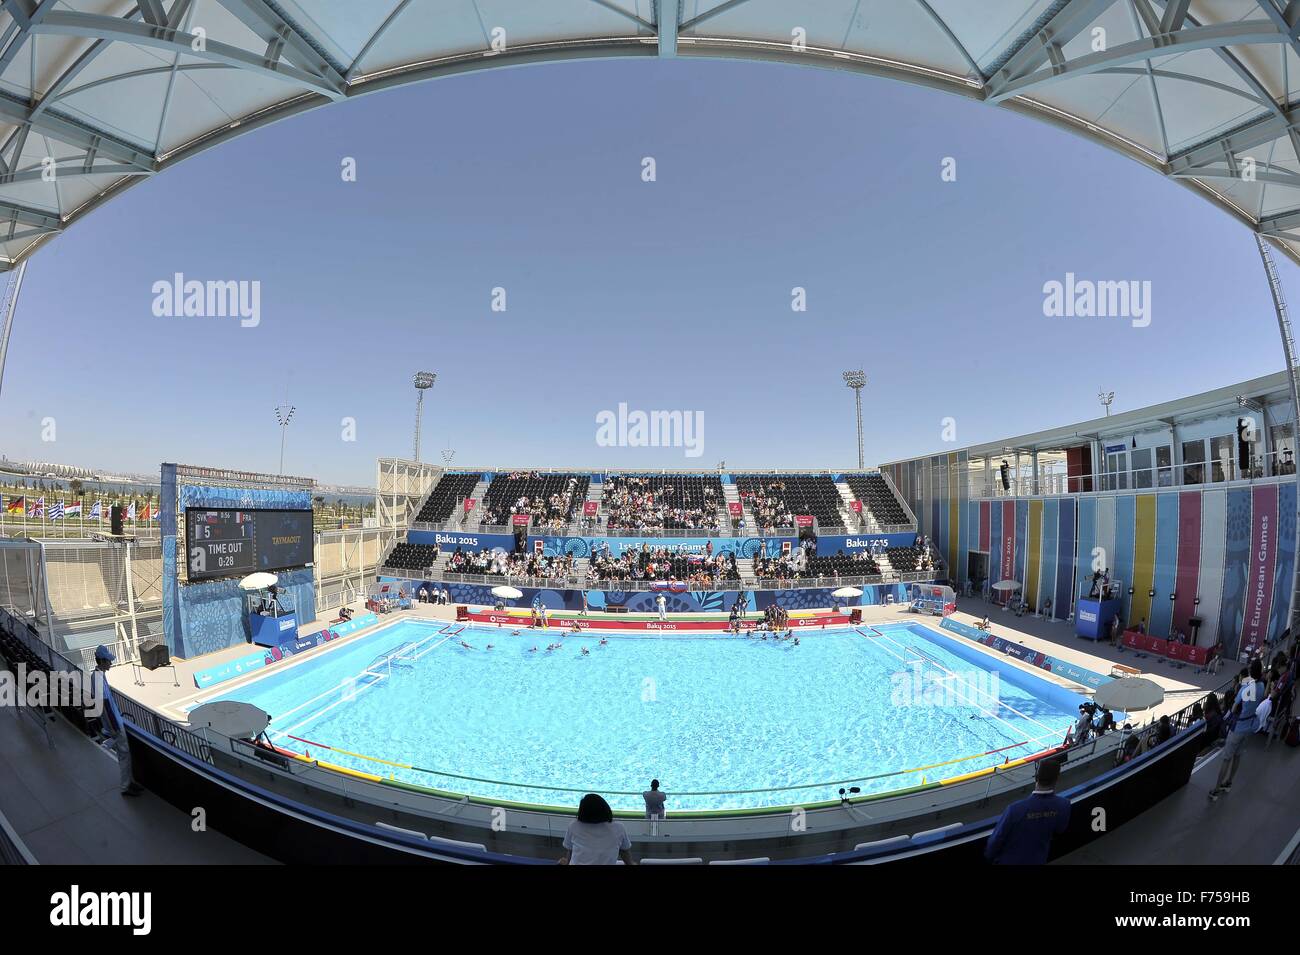 Une GV de Water Polo Arena 2. Parc de jeux européens. Le water-polo Arena.  Bakou. L'Azerbaïdjan. Baku2015. 1er jeux européens. 14/06/2015 Photo Stock  - Alamy